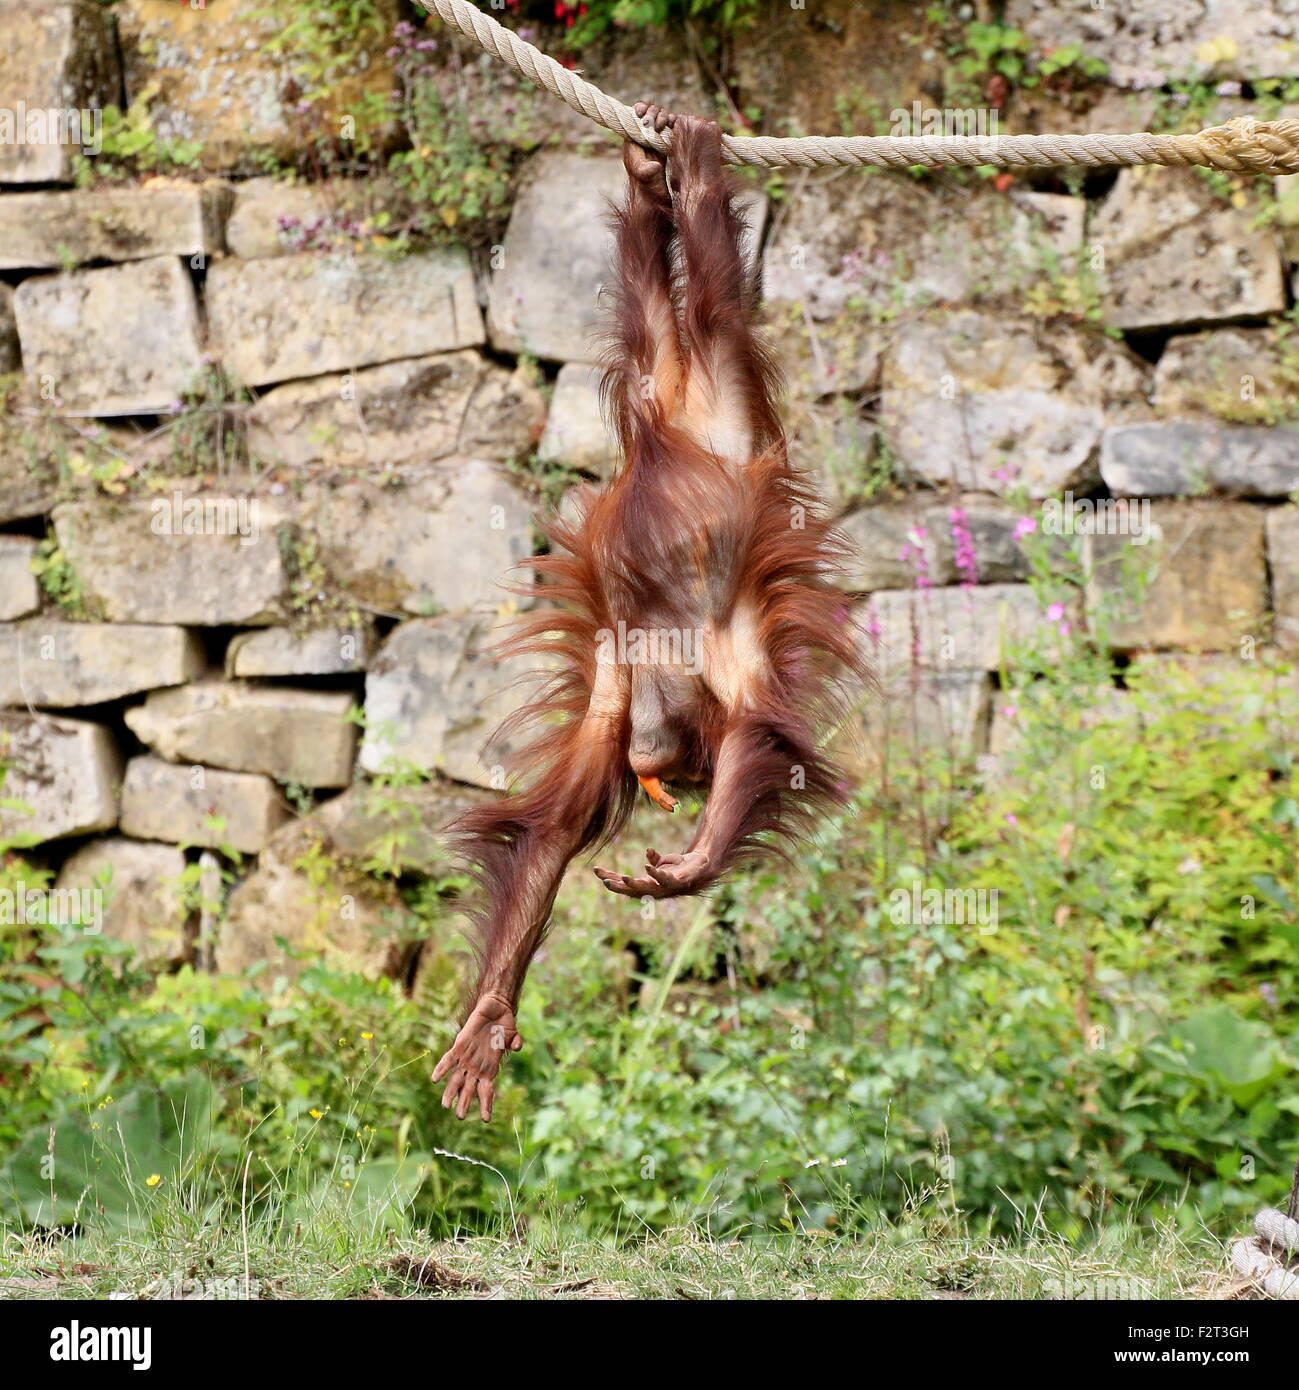 Jeunes orang-outan (Pongo pygmaeus) jouant et suspendu à une corde (série de 10 images) Banque D'Images